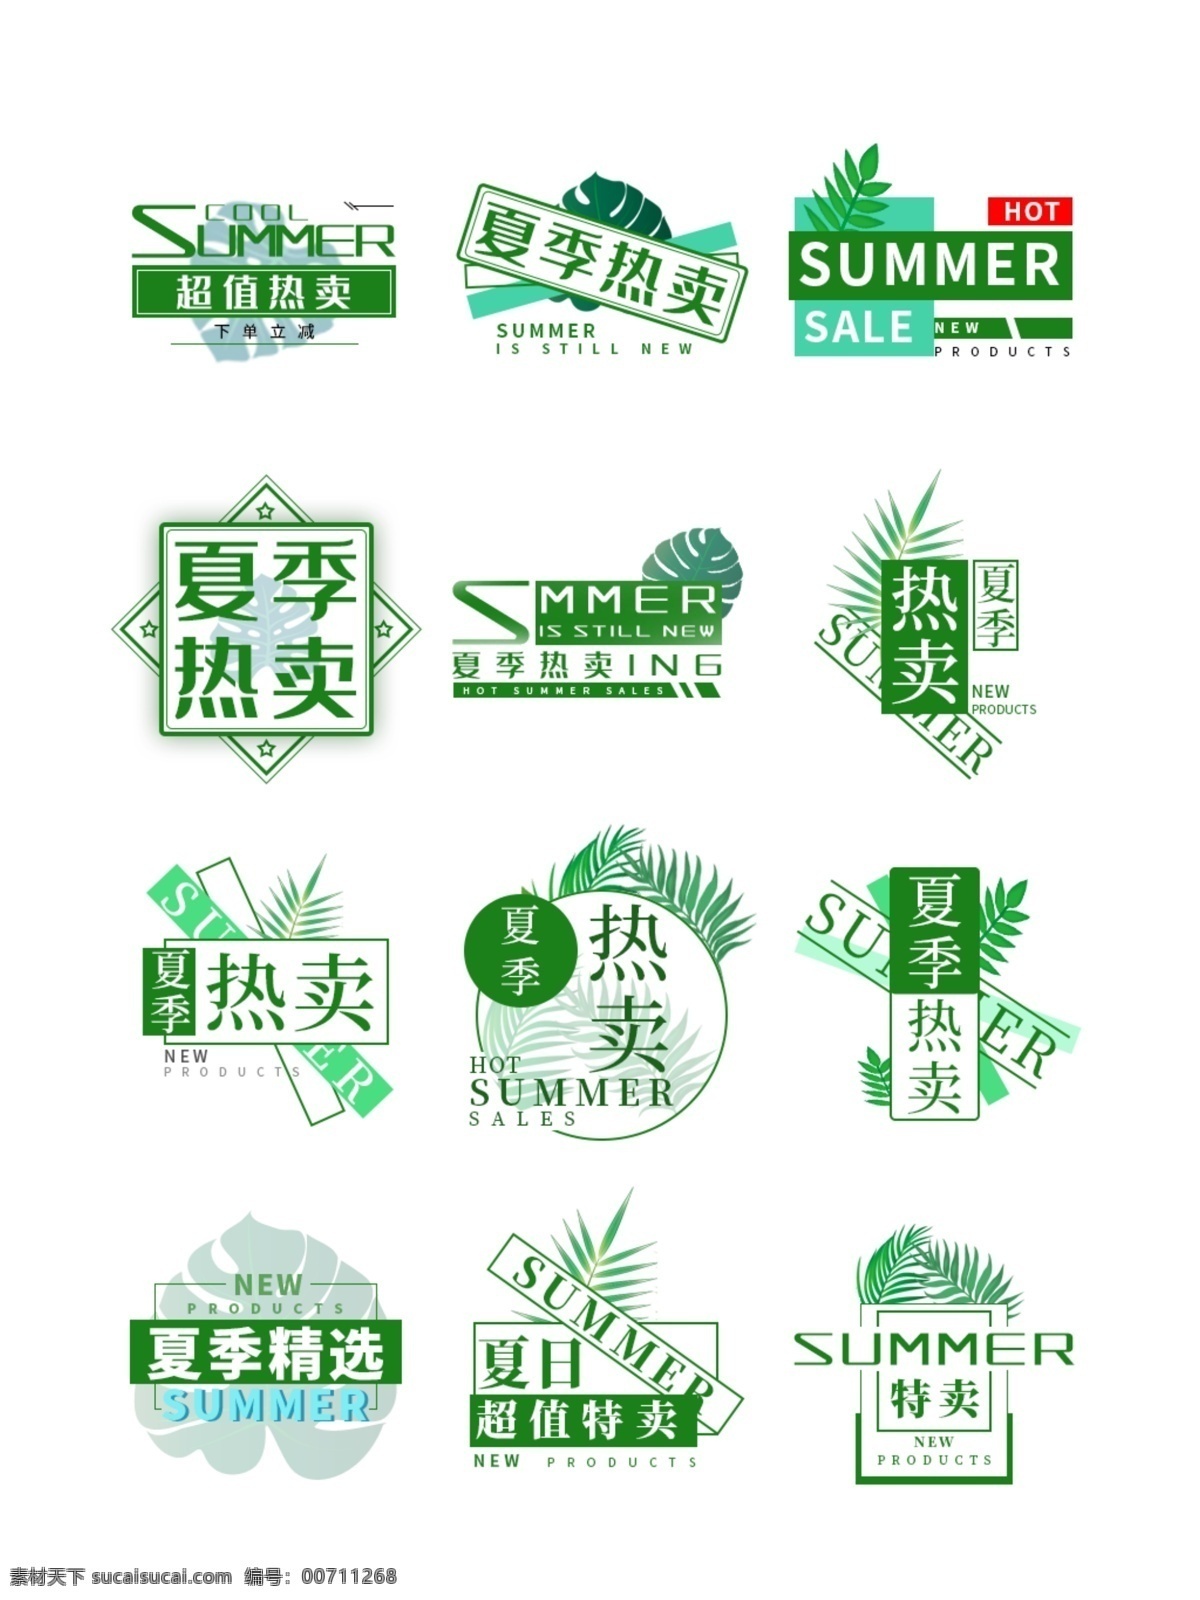 夏季 热卖 文字 排版 文字排版 标题设计 海报素材